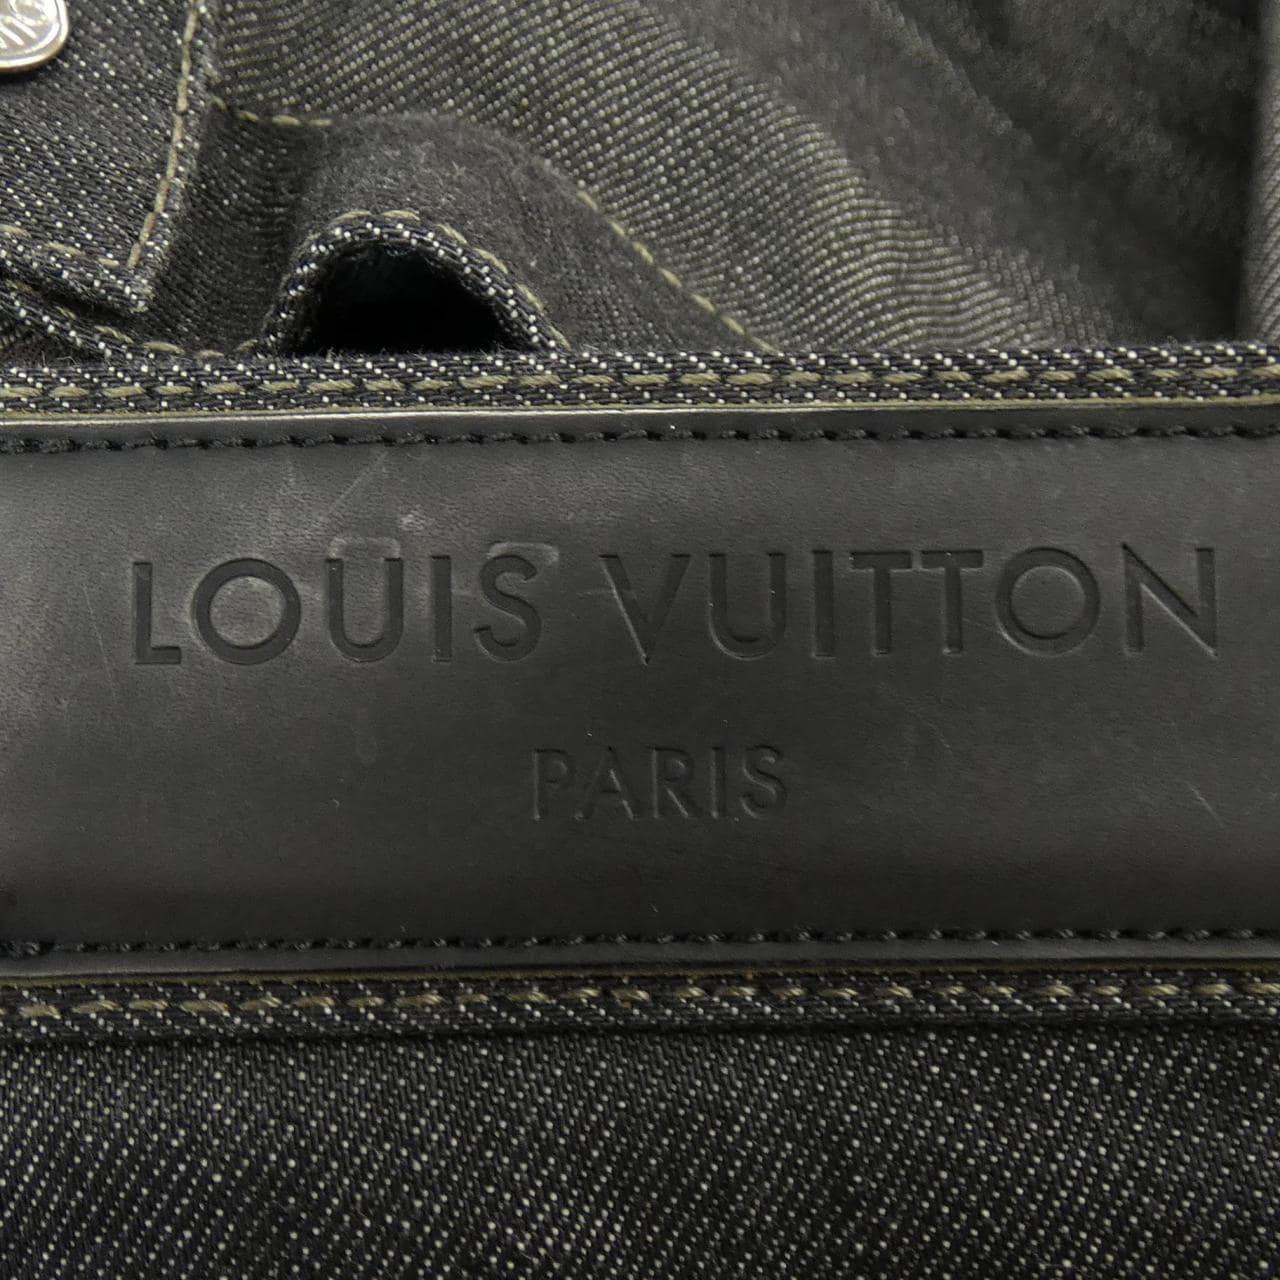 LOUIS VUITTON牛仔褲